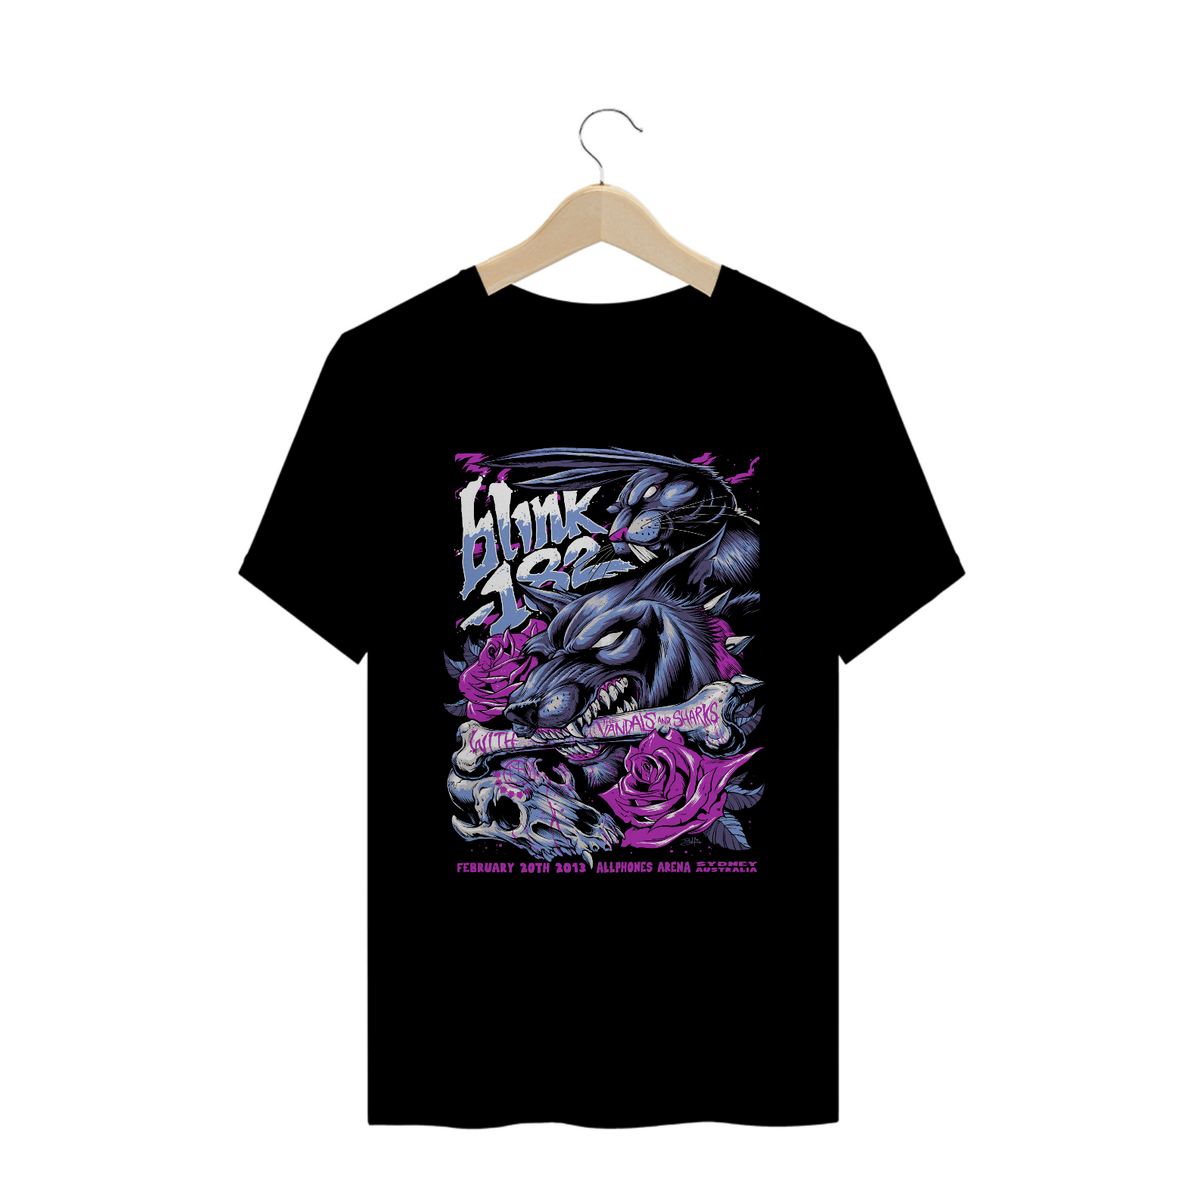 Nome do produto: Camisa Blink-182 - Sydney 2013